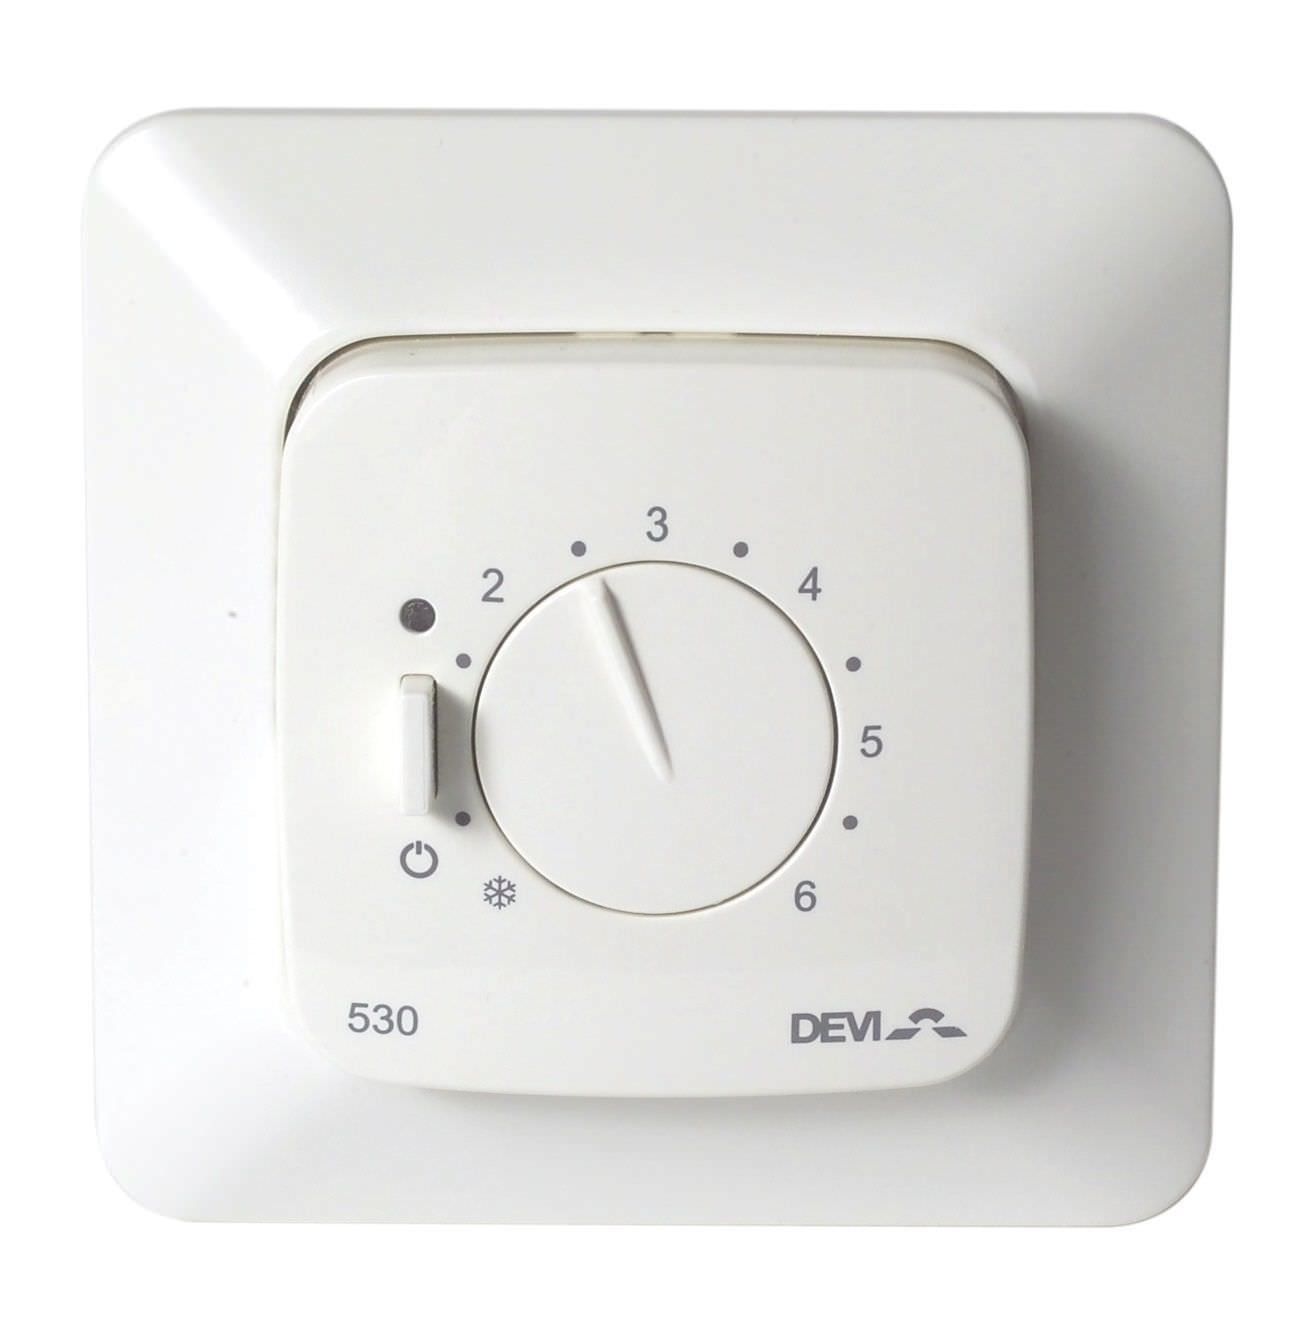 Potinkinis termostatas DEVIreg Elko, 0,25 W, 15 A